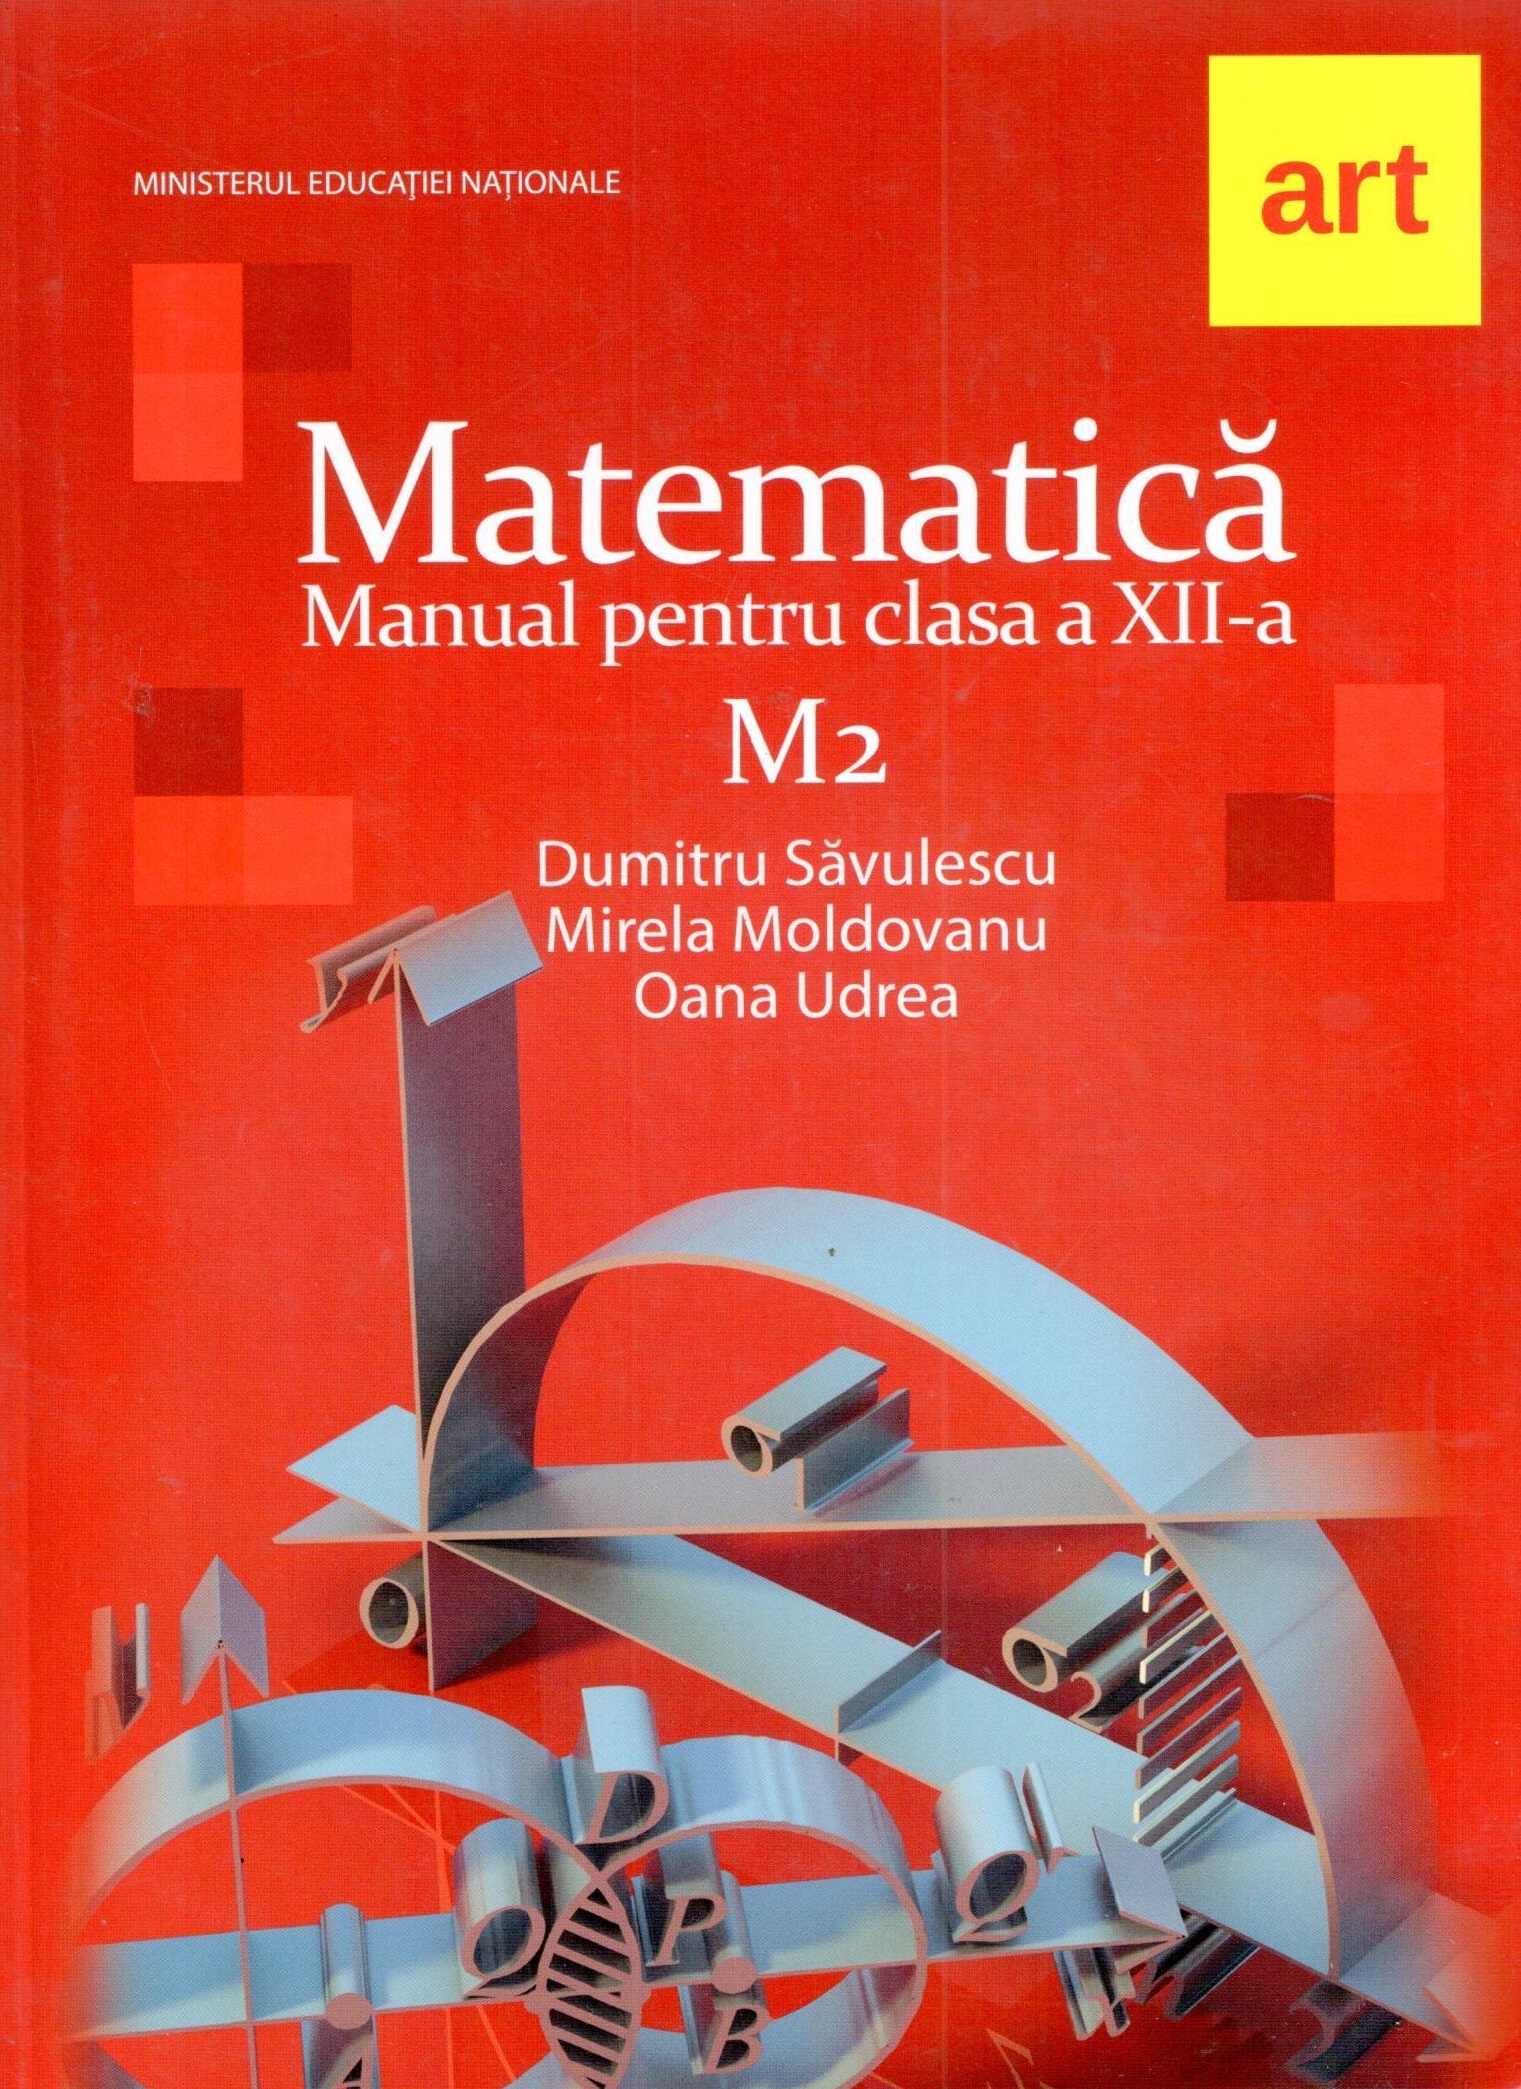 Manual matematica M2 pentru clasa a XII-a | Mirela Moldovan, Dumitru Savulescu ART educational Clasa a XII-a